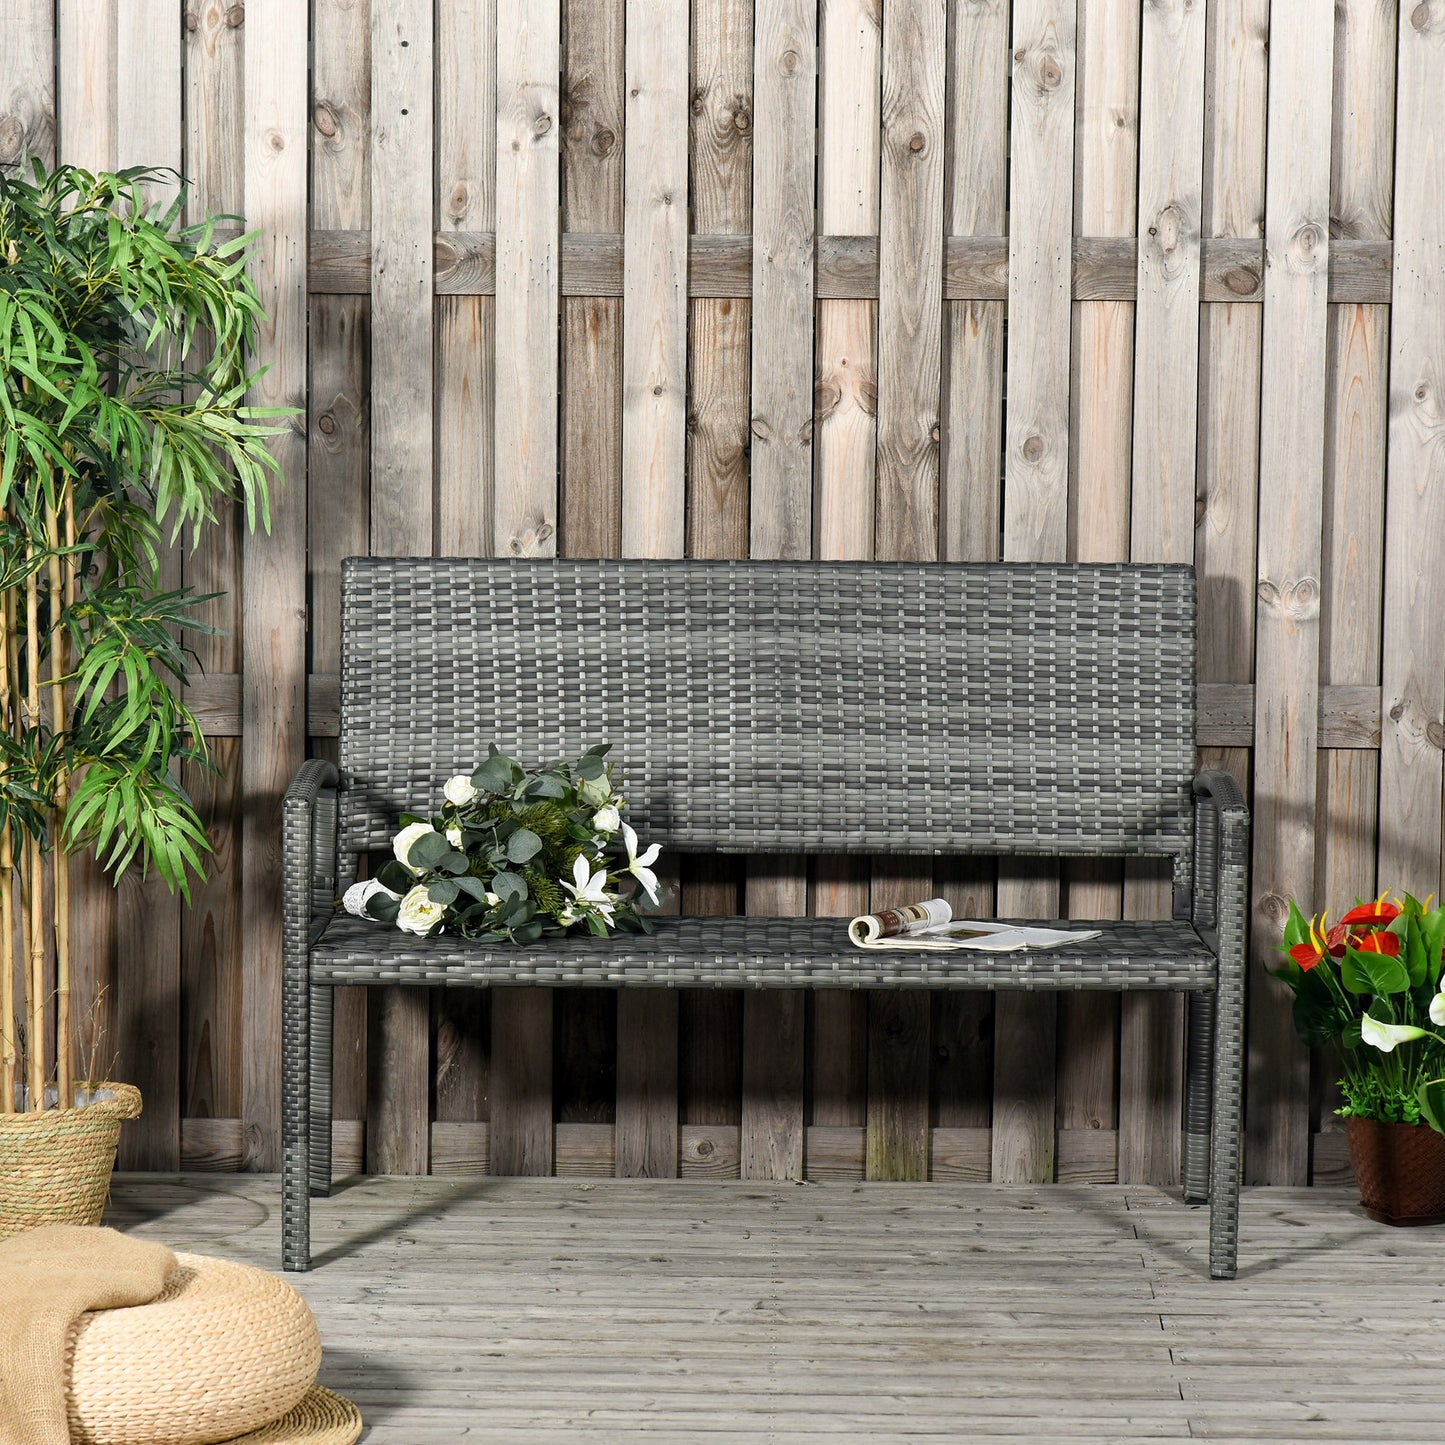 Outsunny Patio Rattan 2 Seater Garden Bench Love Seater Armchair Furniture Outdoor Garden